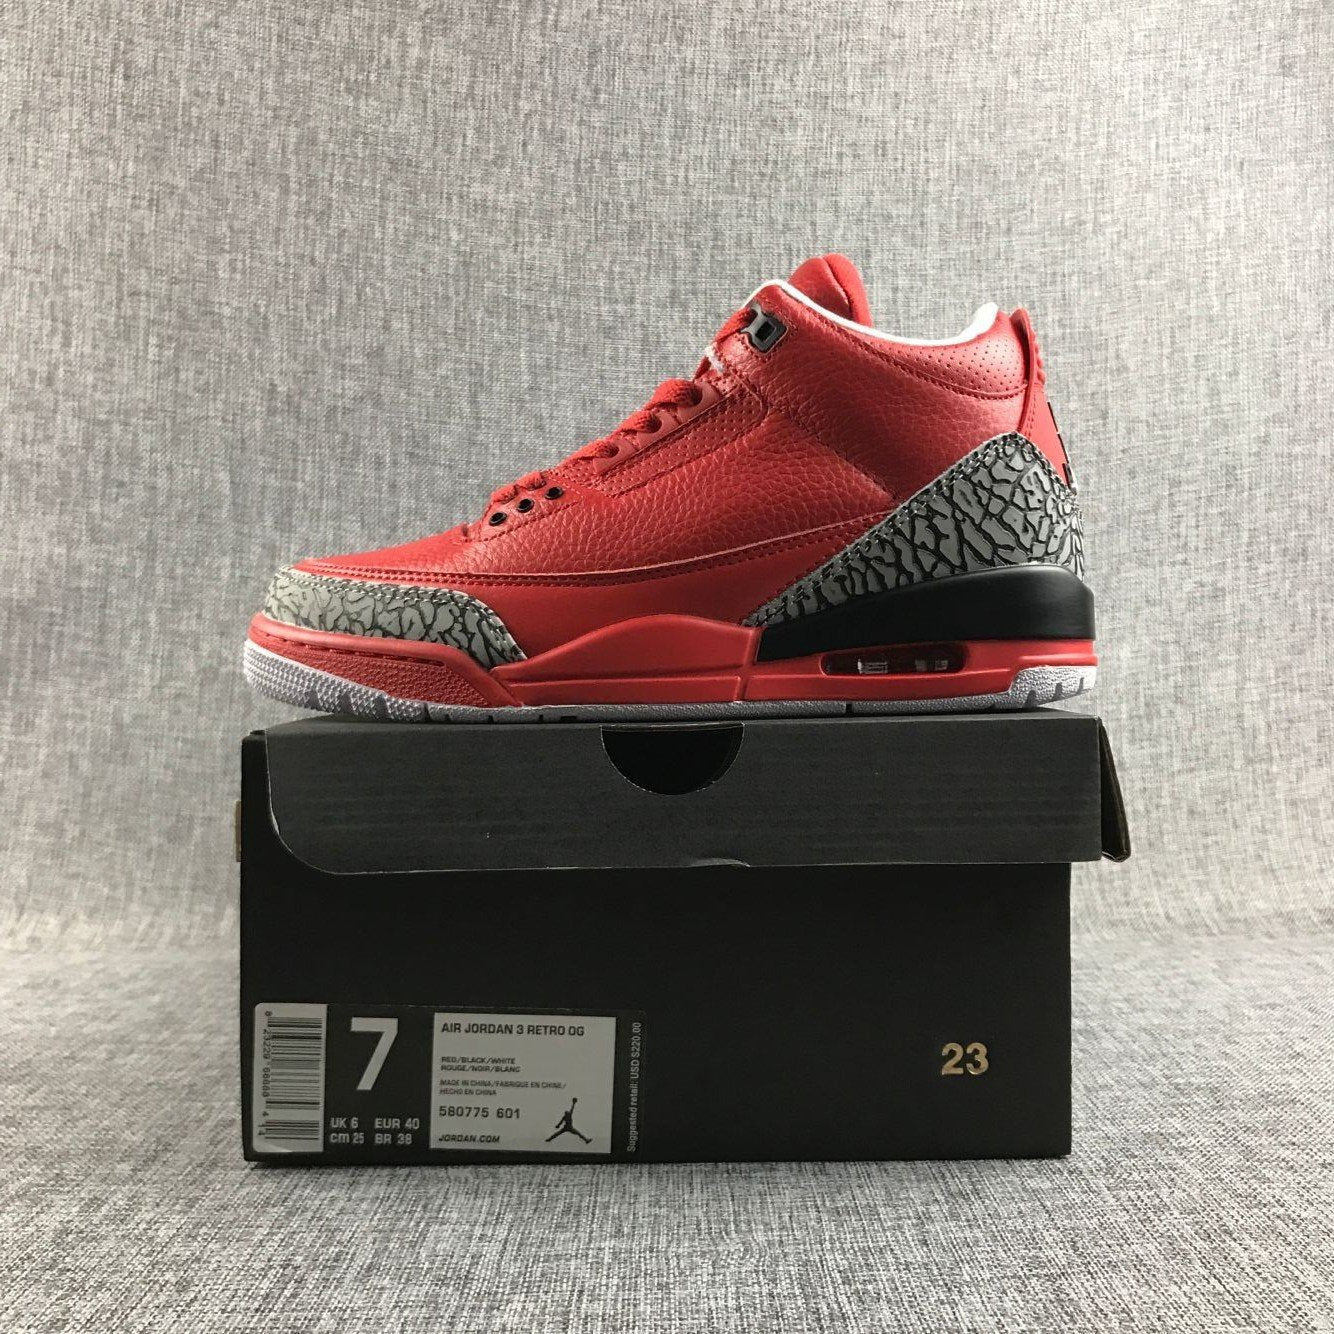 Air Jordan 3 DJ Big Red 580775-601 – juanma-shop